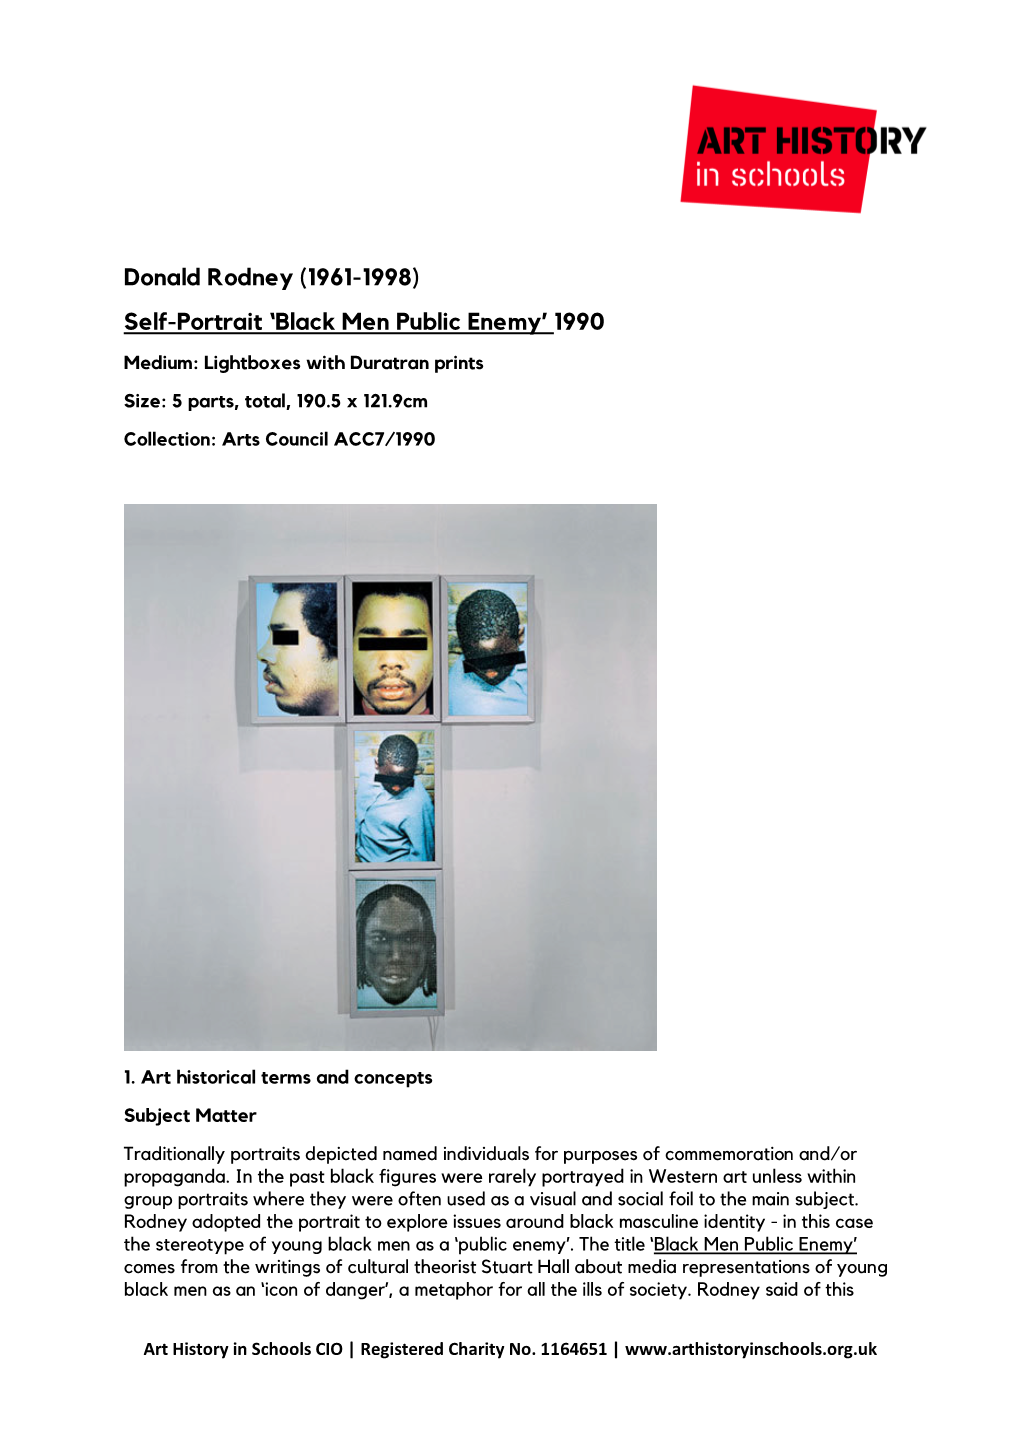 Donald Rodney (1961-1998) Self-Portrait ‘Black Men Public Enemy’ 1990